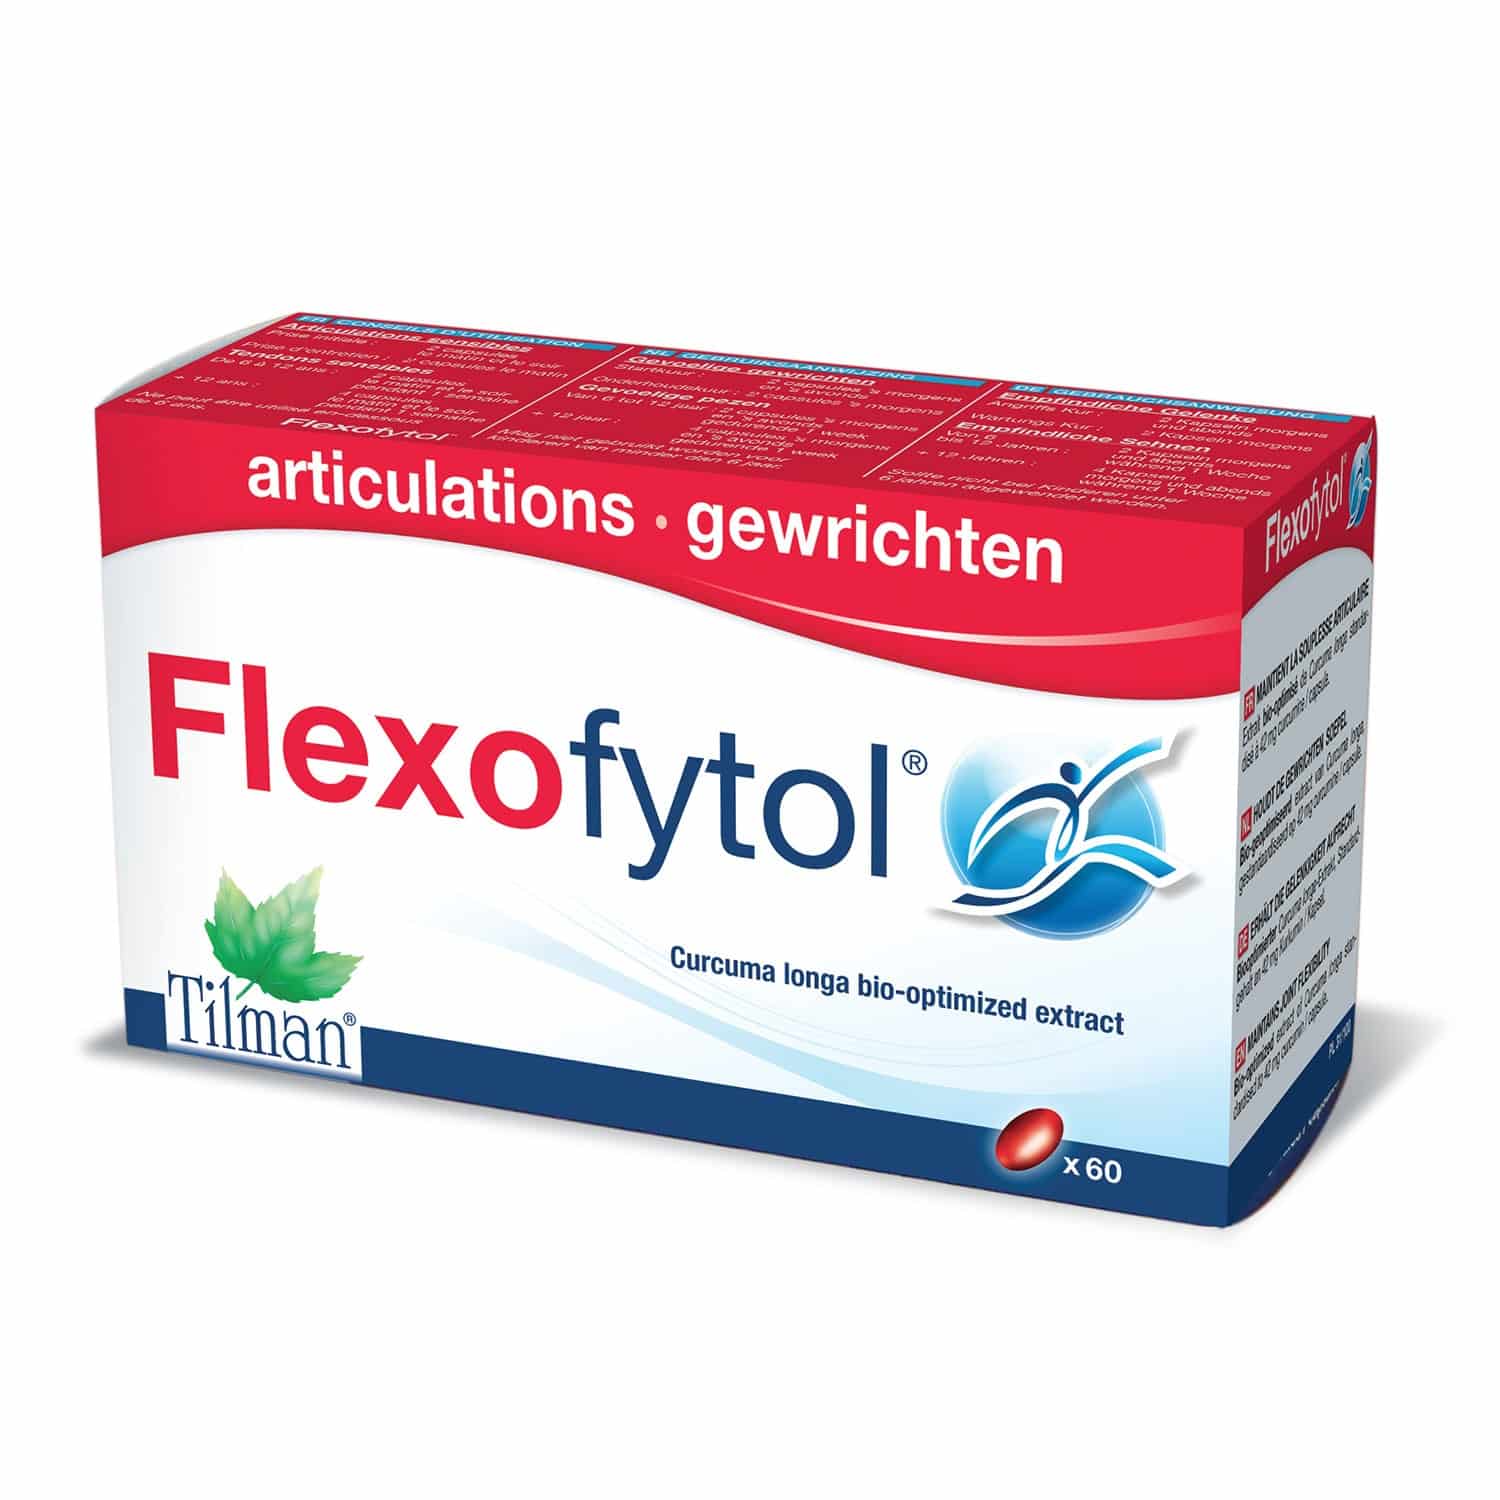 Flexofytol